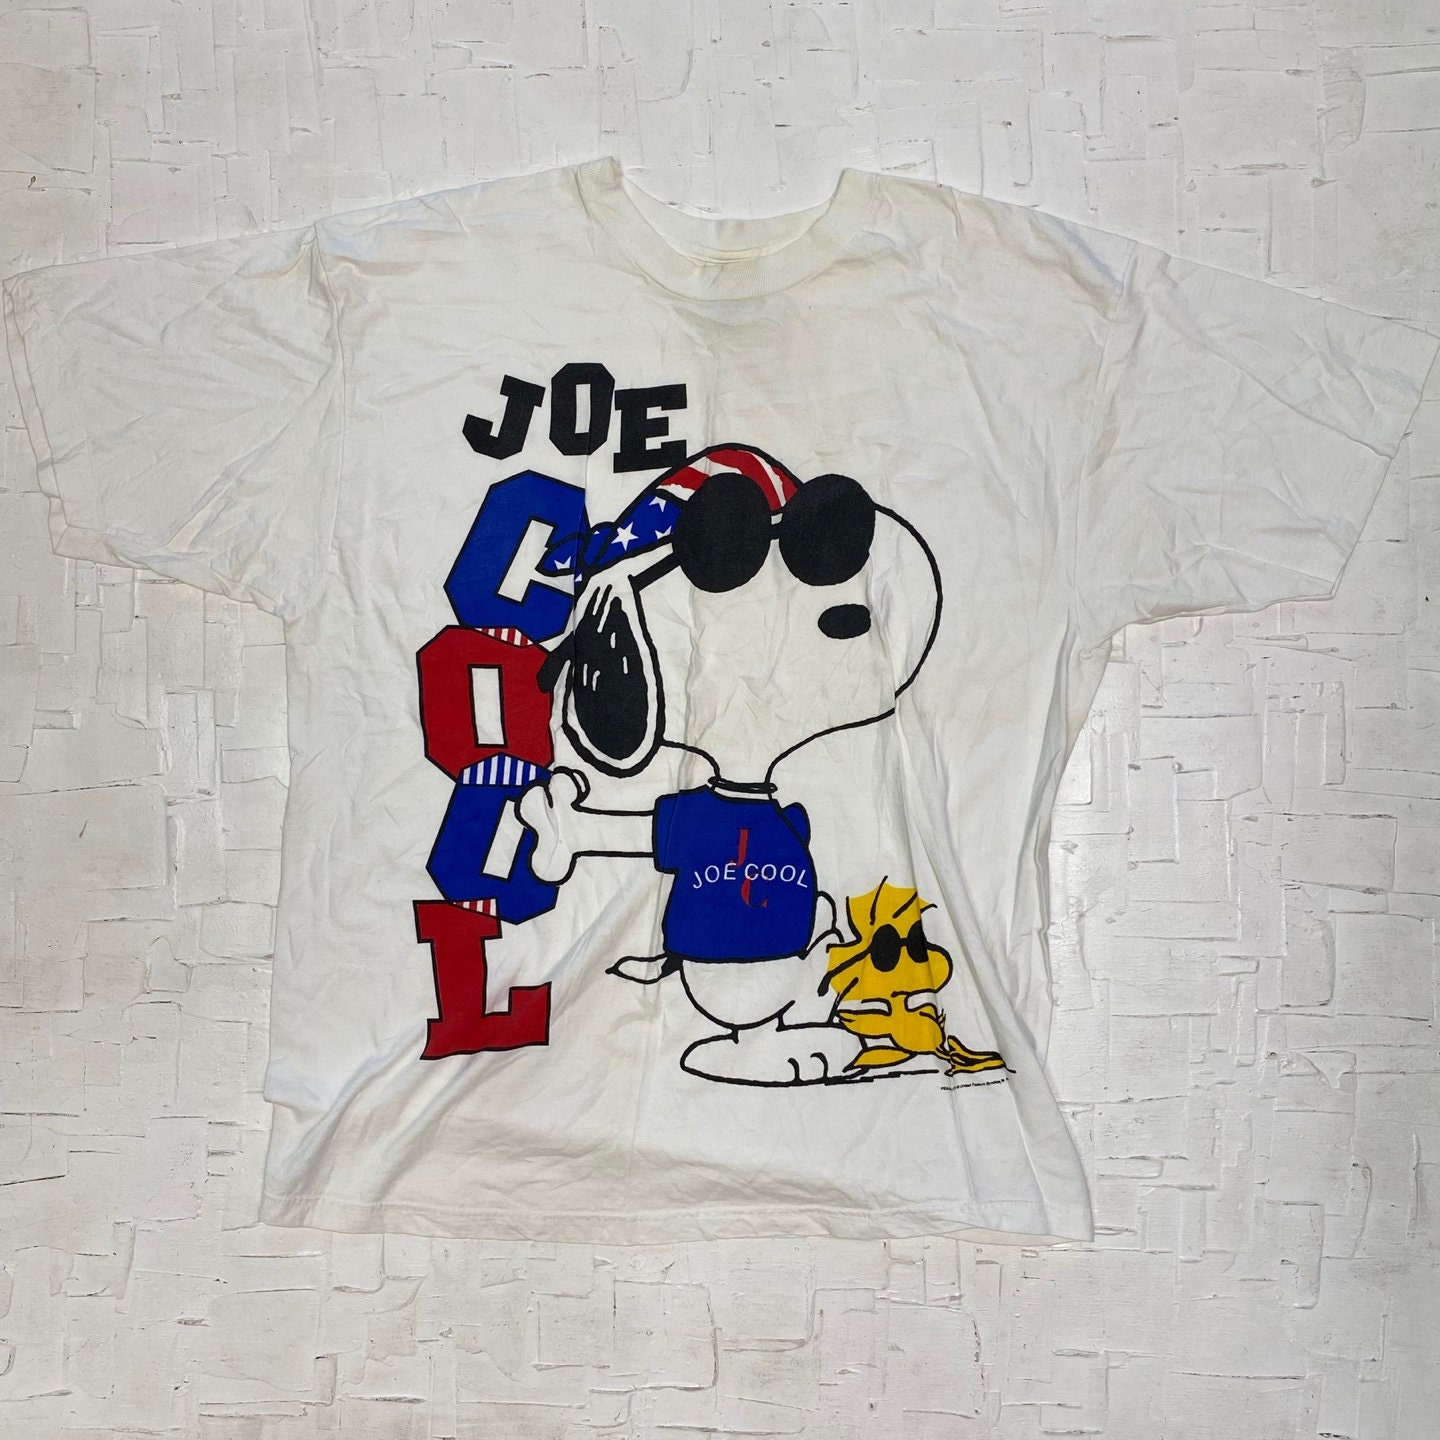 Snoopy strawtopper Joe Cool fits Stanley yet